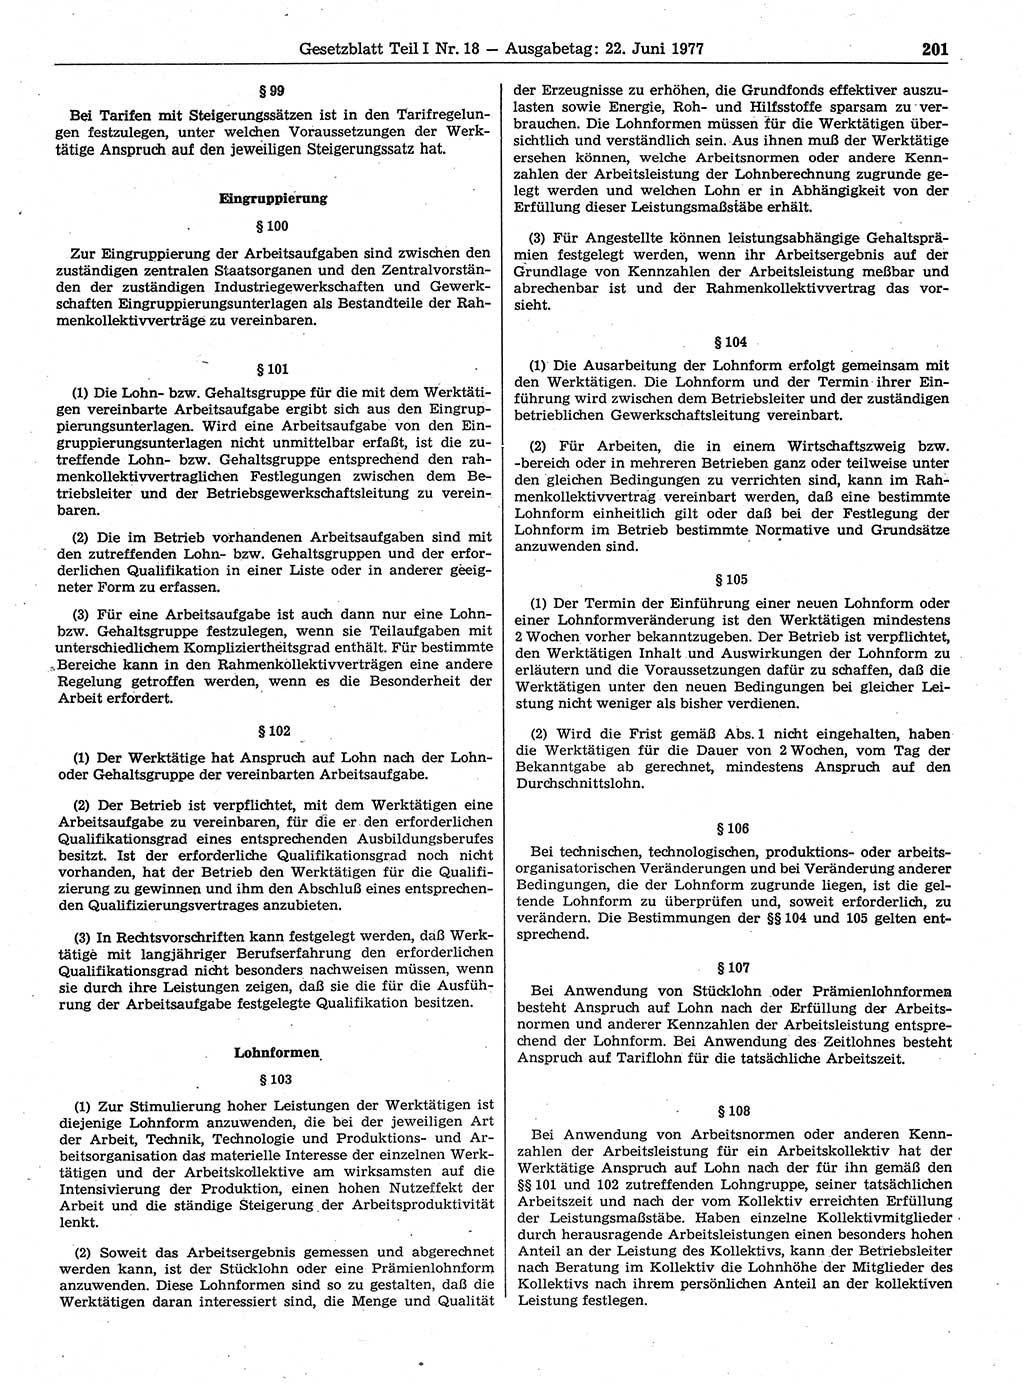 Gesetzblatt (GBl.) der Deutschen Demokratischen Republik (DDR) Teil Ⅰ 1977, Seite 201 (GBl. DDR Ⅰ 1977, S. 201)